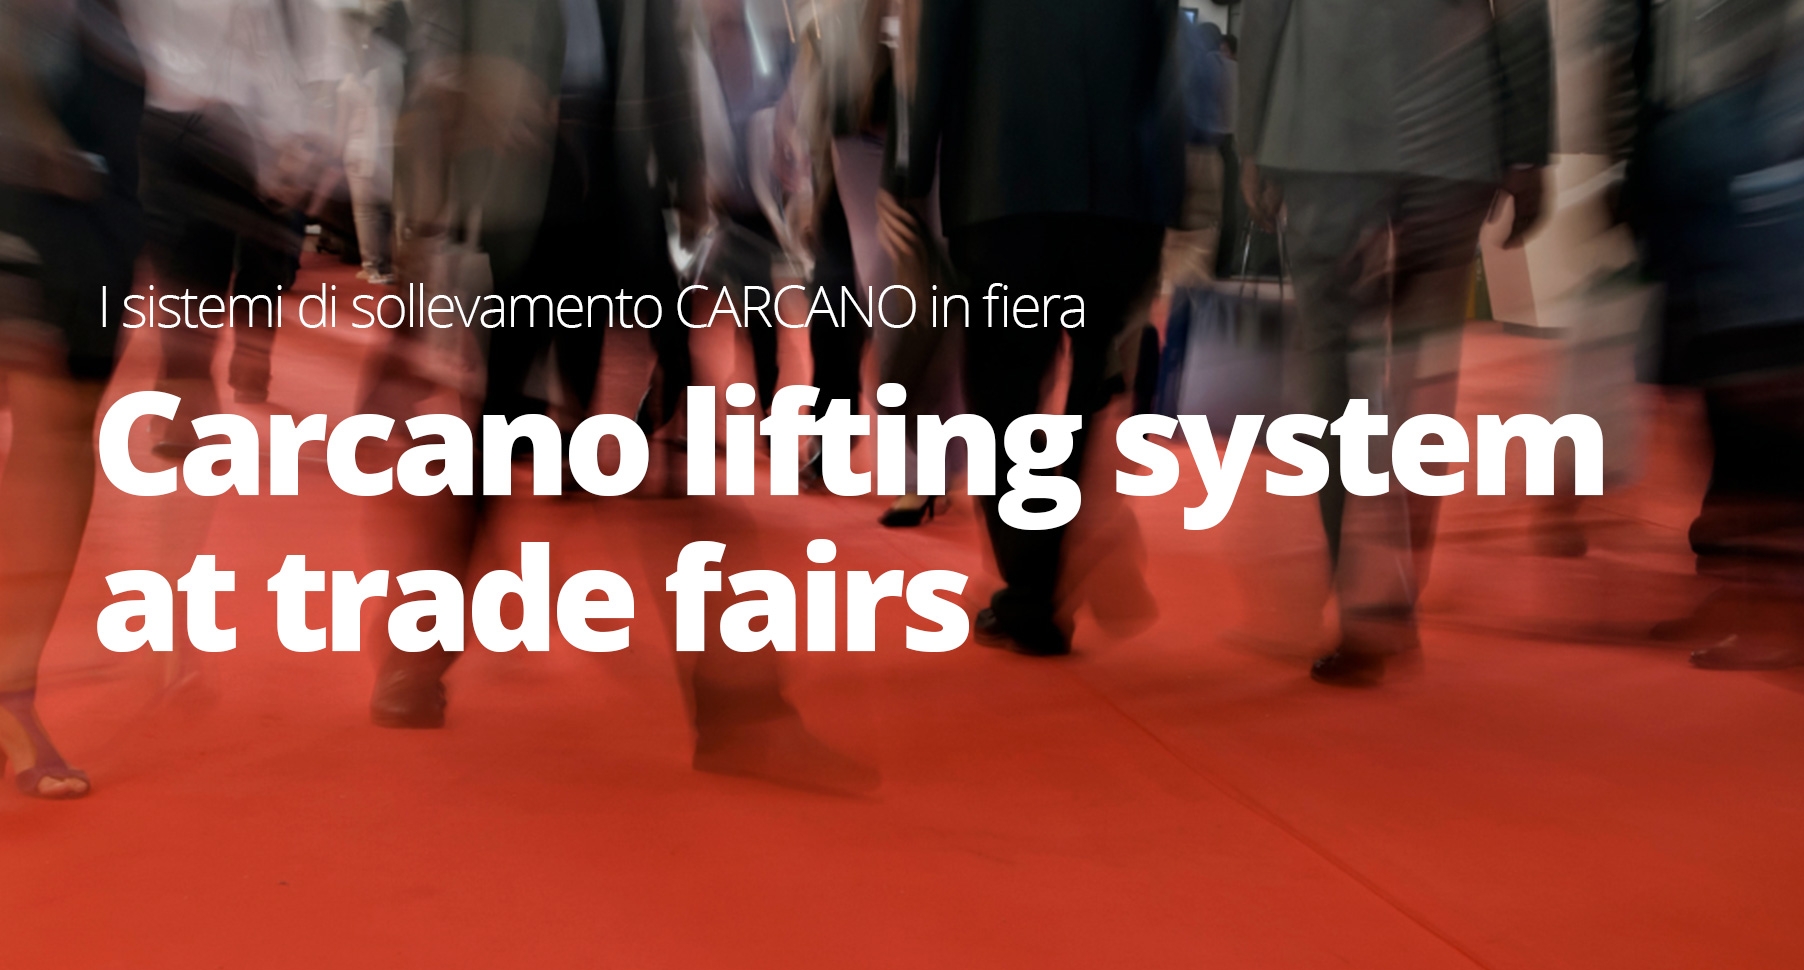 Carcano at trade fairs again